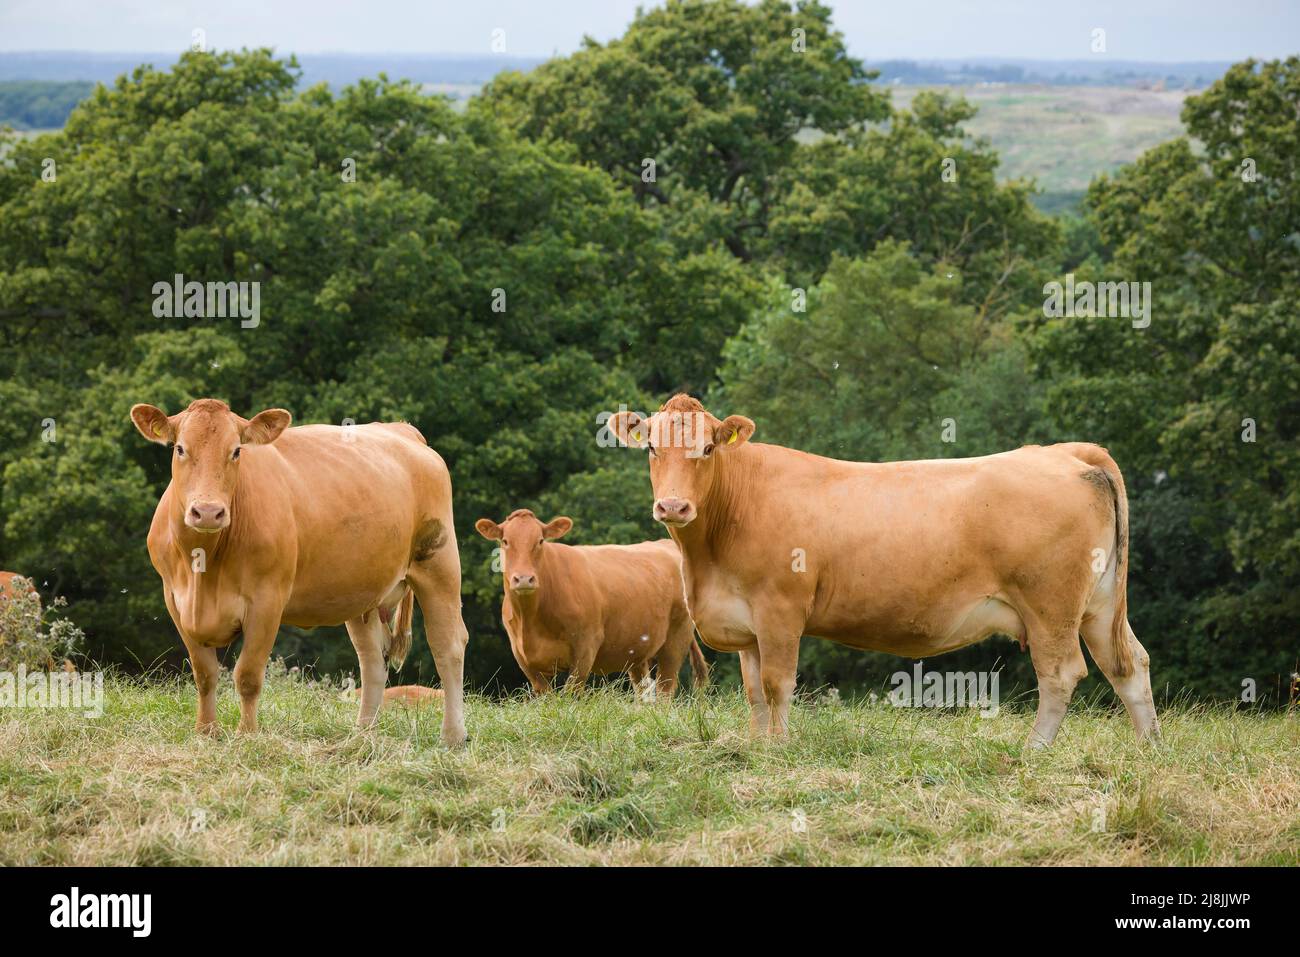 Rebaño de vacas Hereford, ganado vacuno en un campo en una granja, Reino Unido Foto de stock